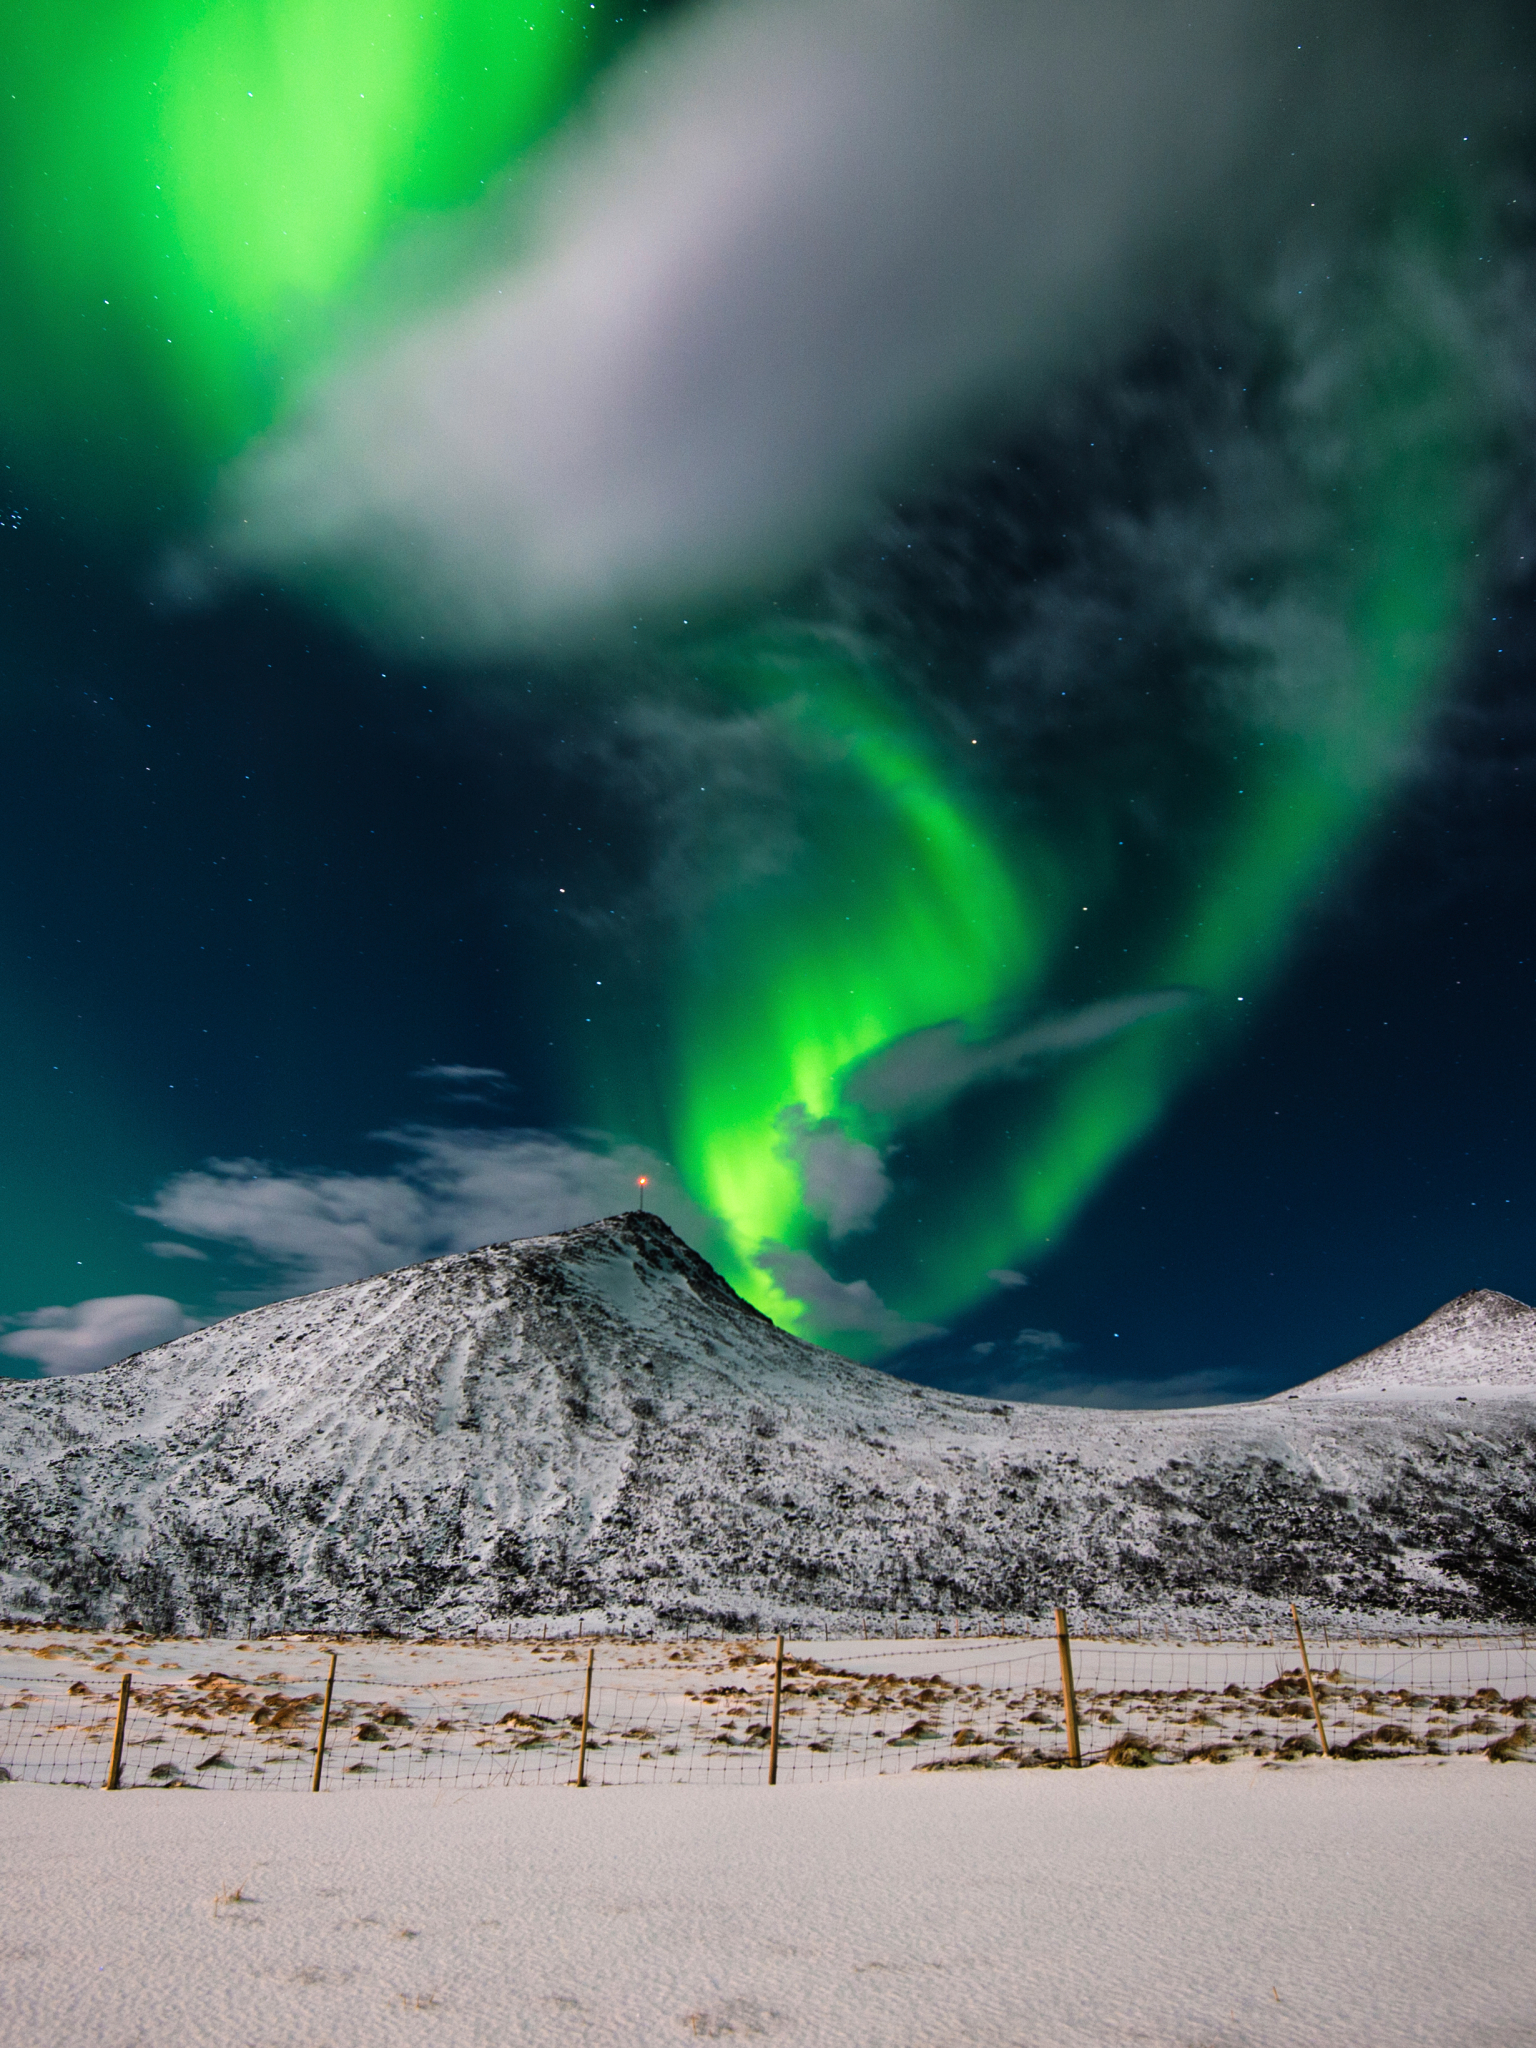 Descarga gratuita de fondo de pantalla para móvil de Paisaje, Naturaleza, Cielo, Noche, Nieve, Montaña, Aurora Boreal, Noruega, Islas Lofoten, Tierra/naturaleza.